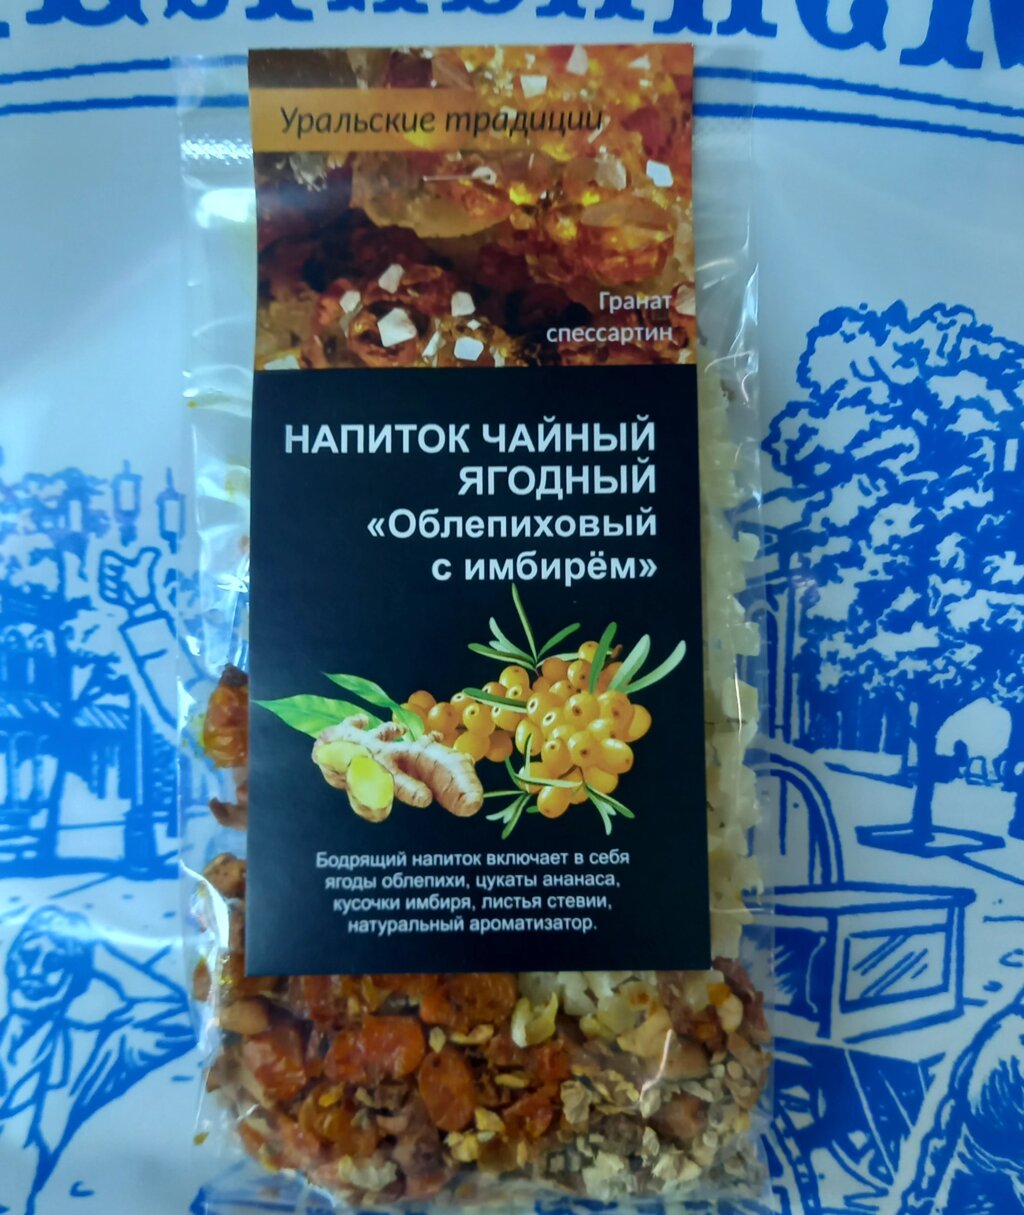 Напиток чайный ягодный «Облепиховый с имбирём» (Спессартин) от компании Магазин сувениров и подарков "Особый Случай" в Челябинске - фото 1